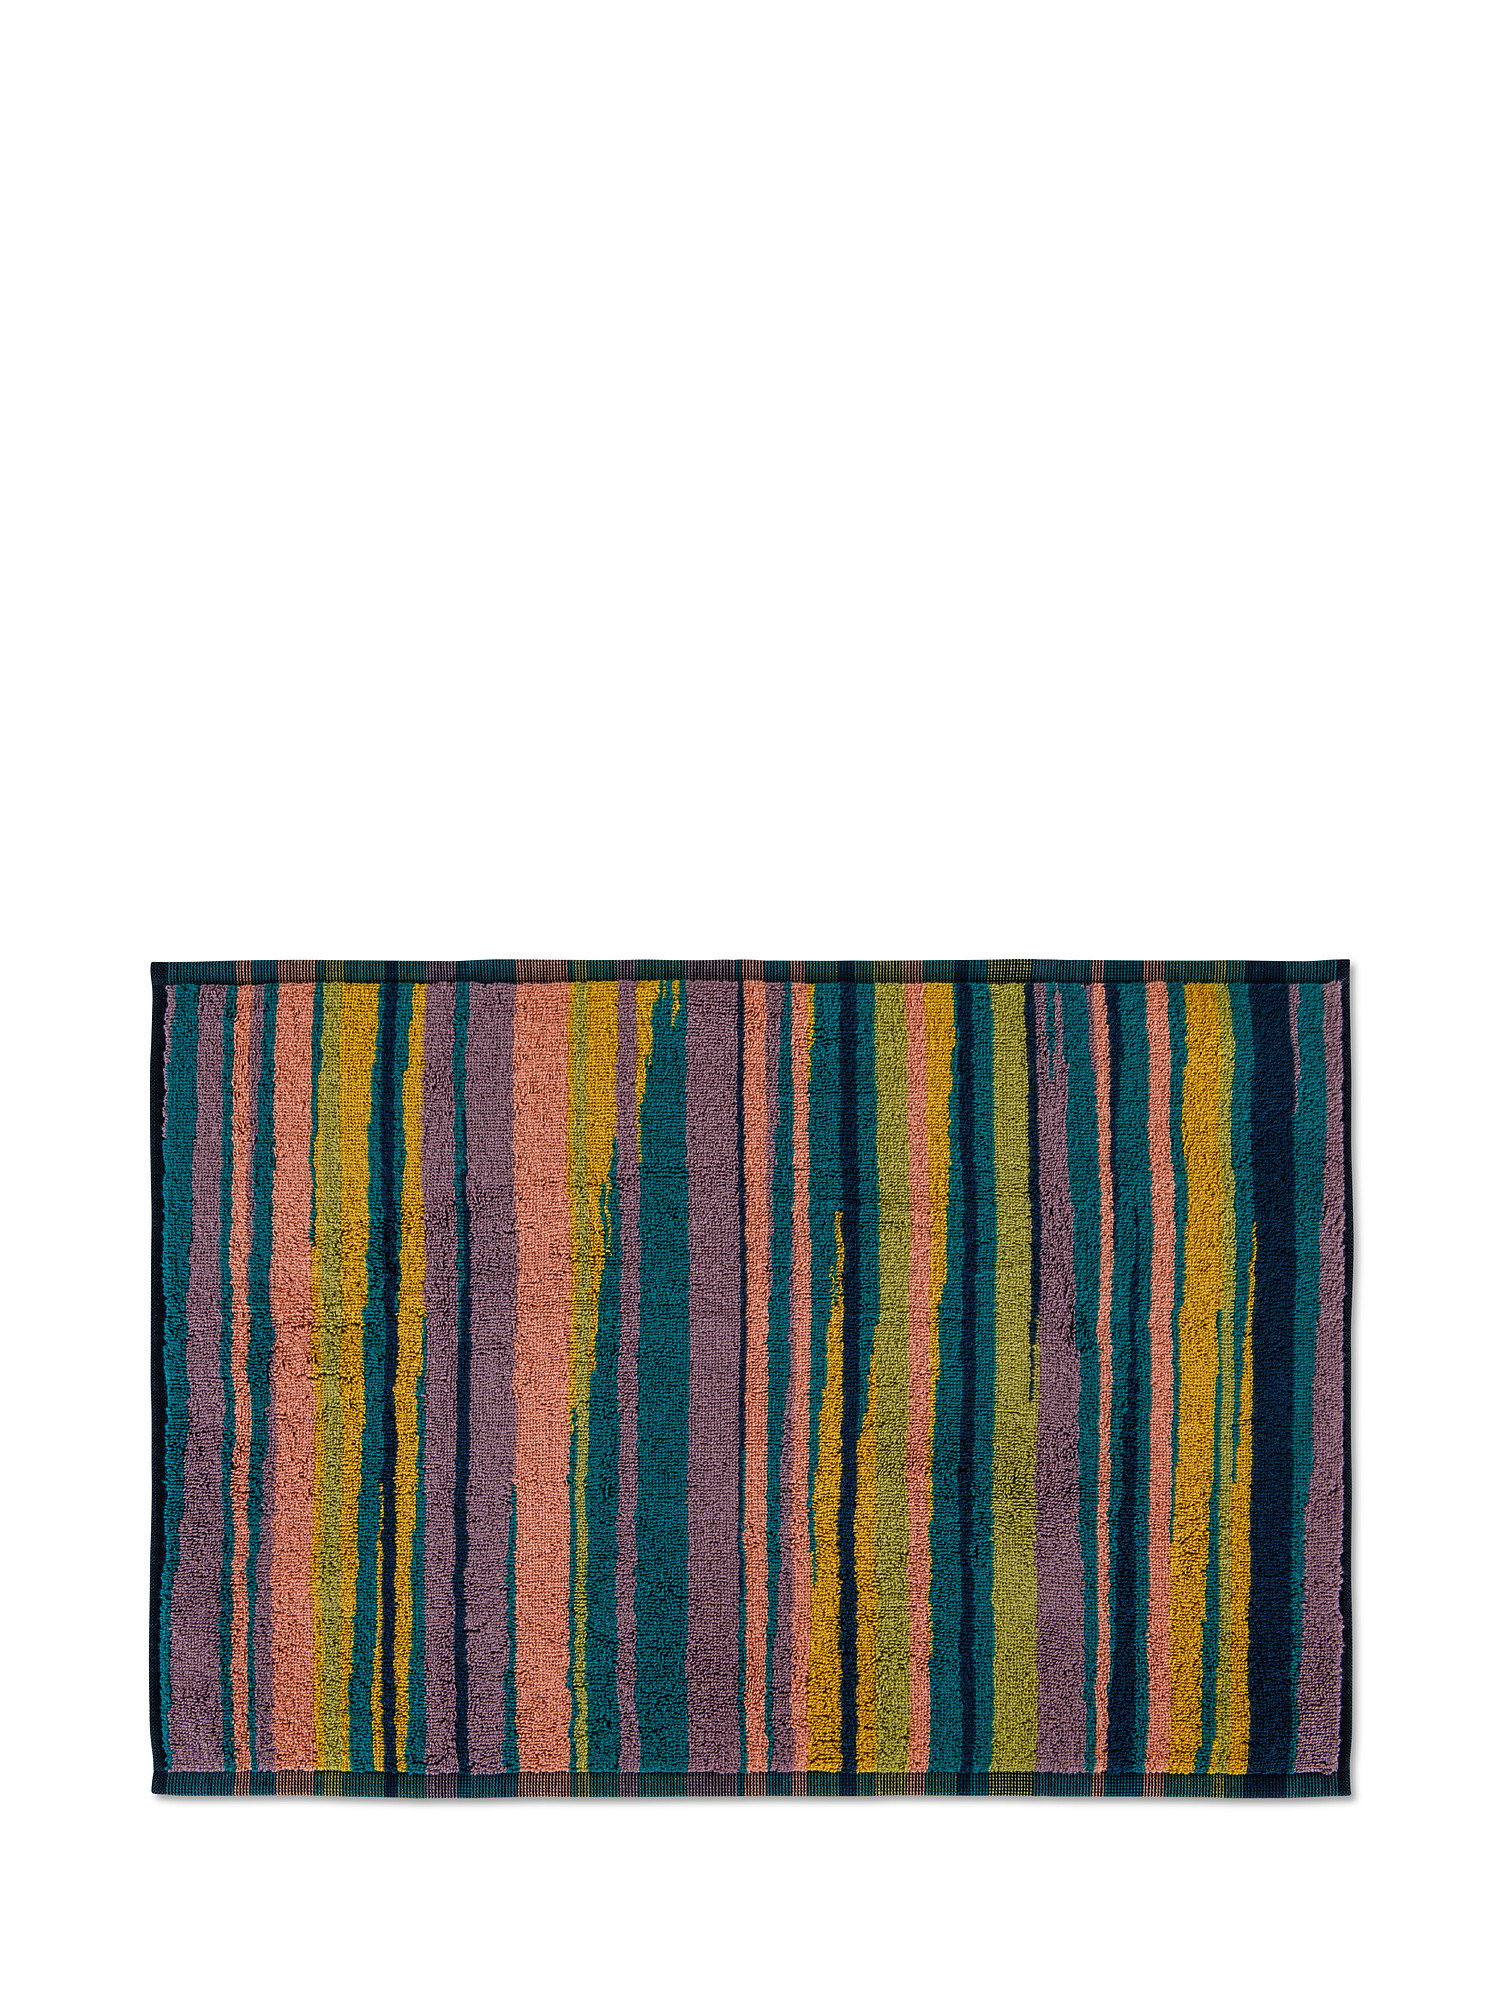 Asciugamano cotone jacquard motivo righe camouflage, Multicolor, large